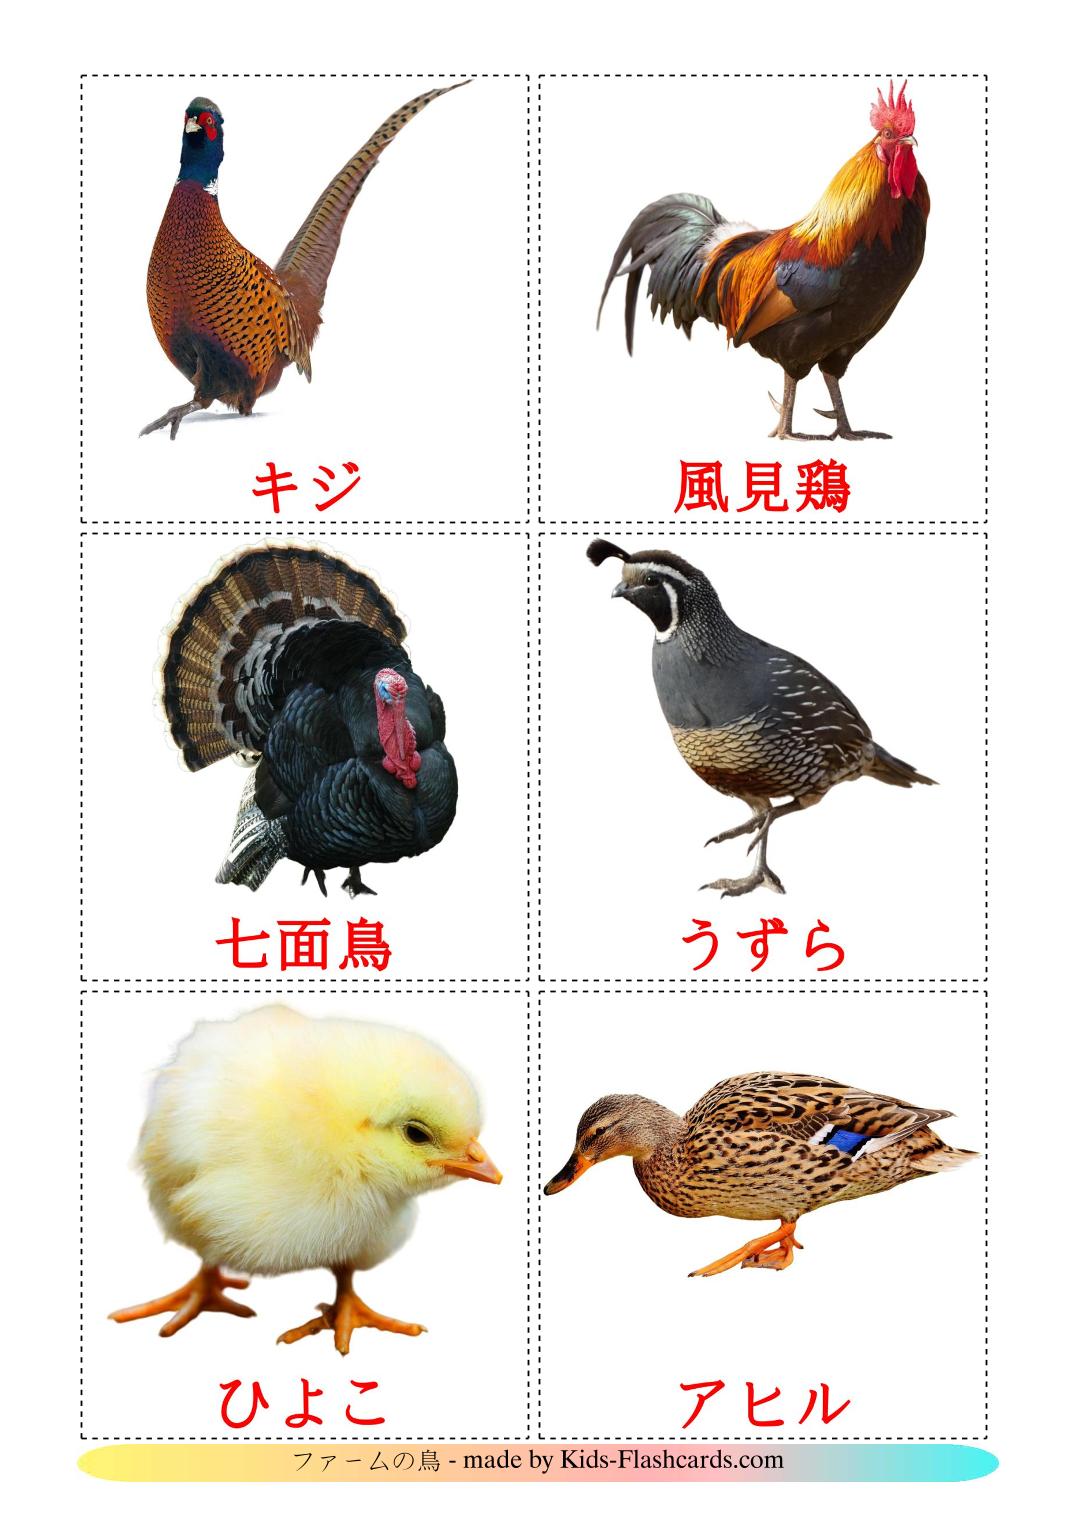 Les Oiseaux de Ferme - 11 Flashcards japonais imprimables gratuitement